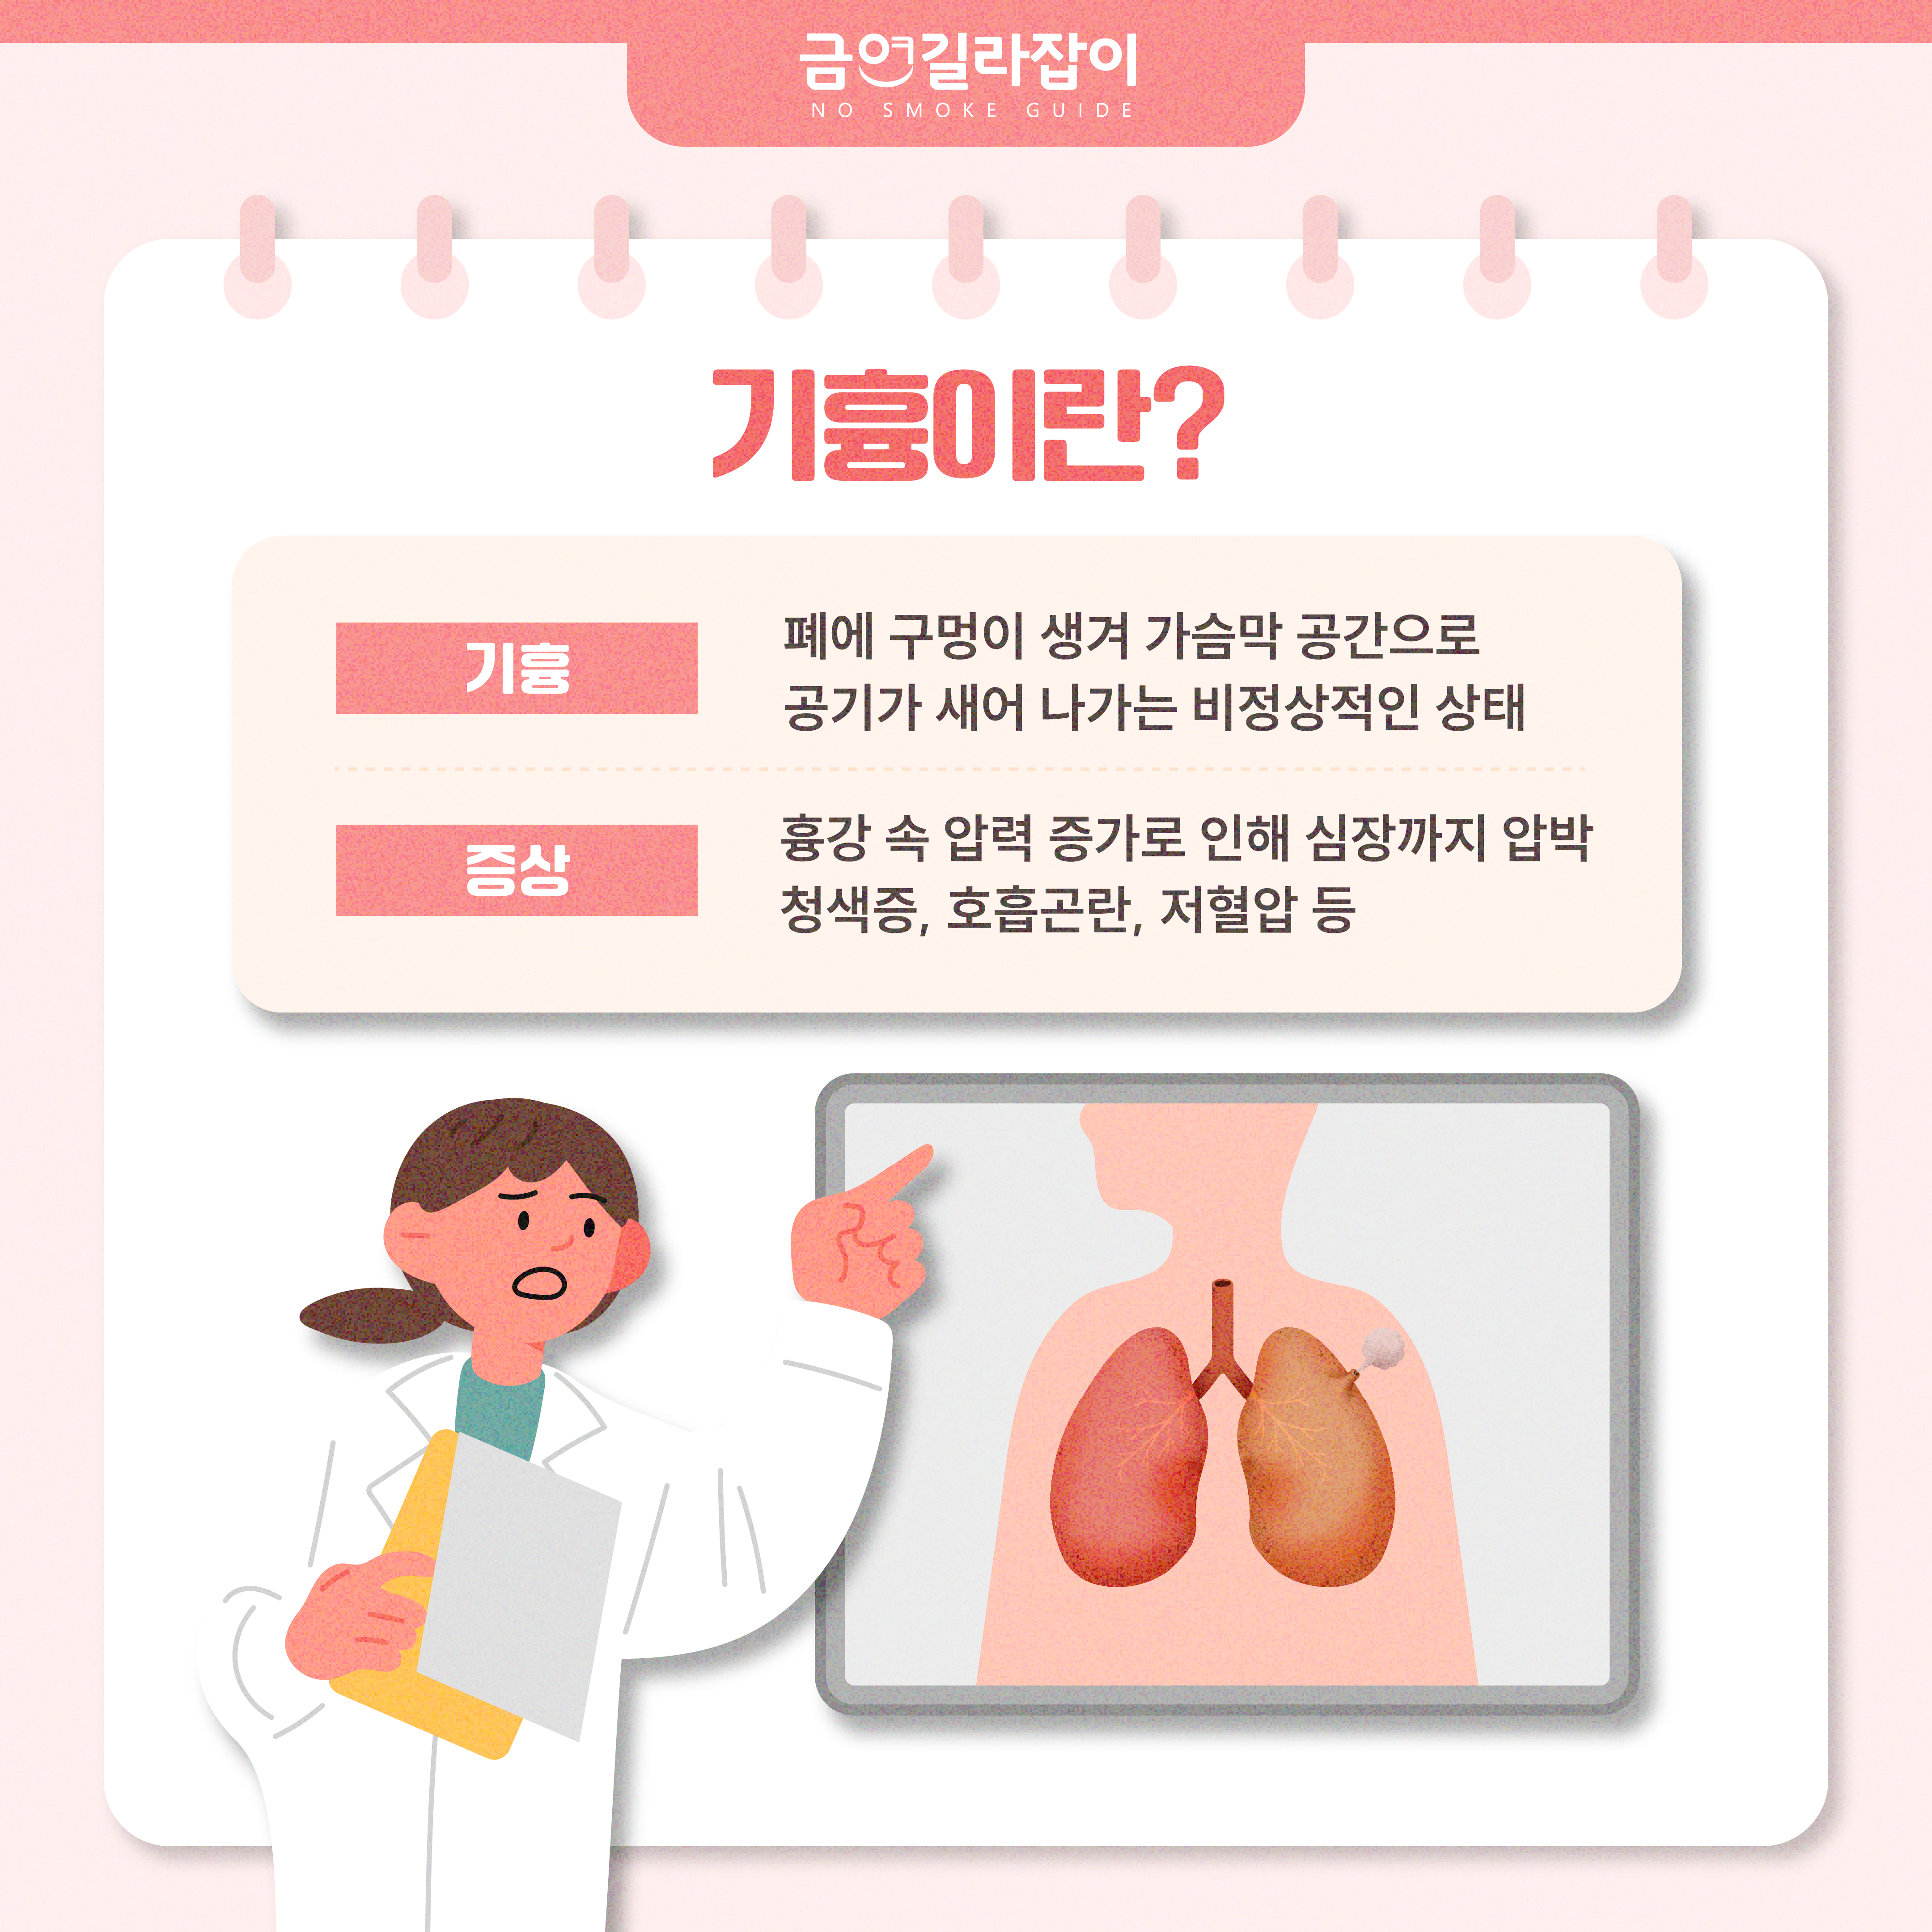 쿡쿡 쑤시는 가슴통증 - 원인은 흡연?